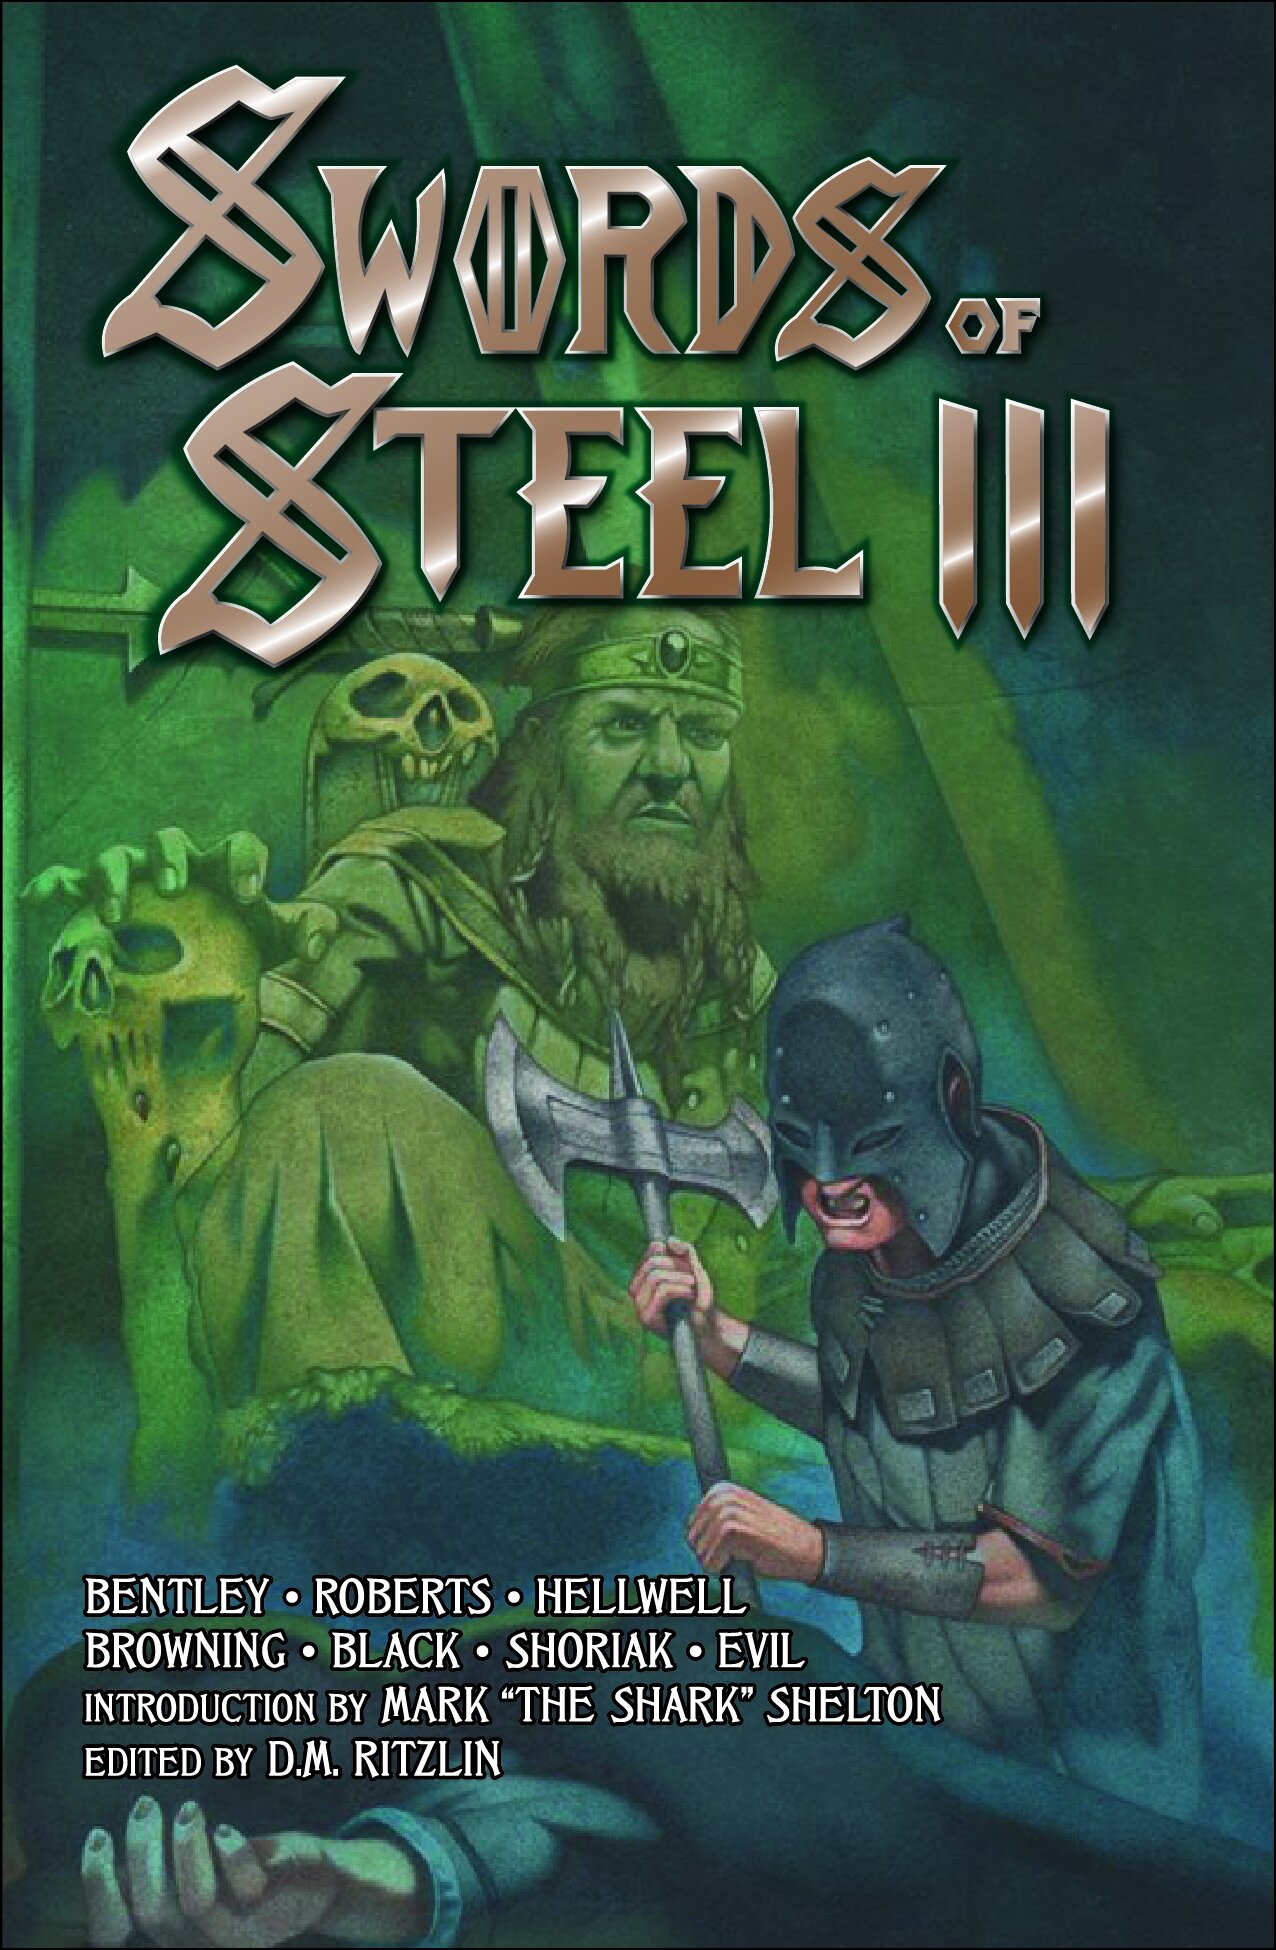 Swords of Steel III